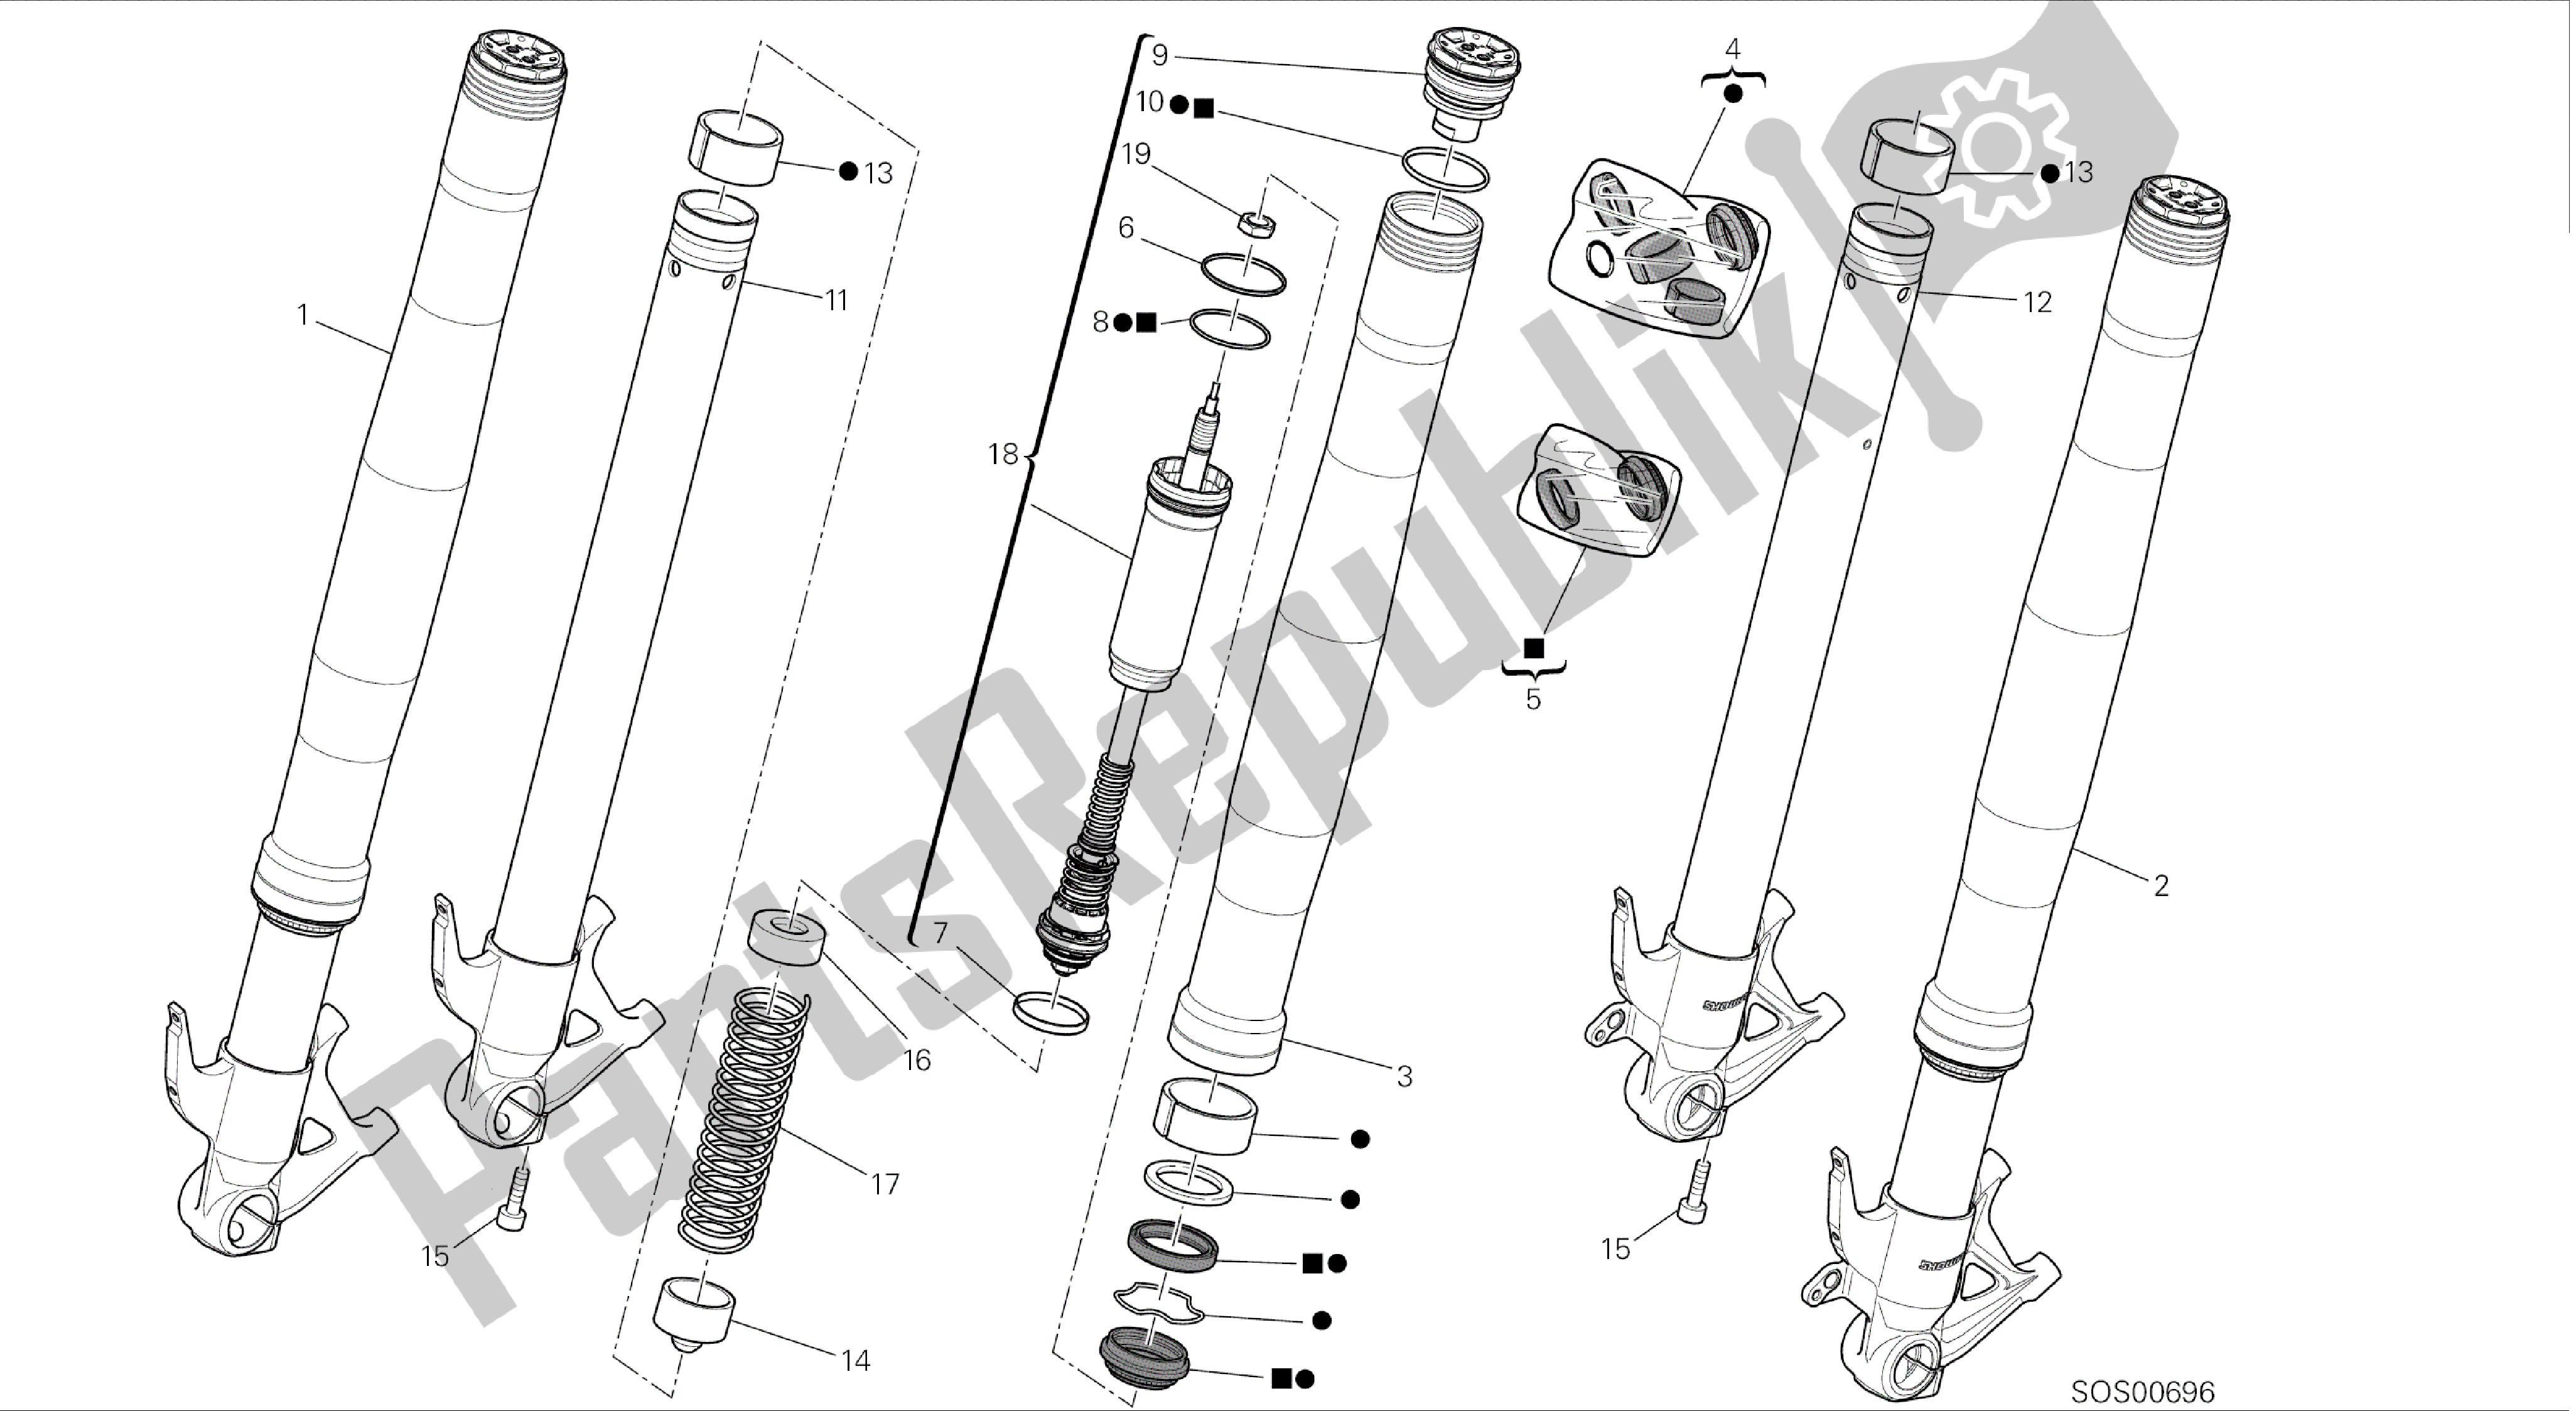 Todas las partes para Dibujo 21a - Horquilla Delantera [mod: 899 Abs; Xst: Marco De Grupo Aus, Eur, Fra, Jap, Twn] de Ducati Panigale 899 2014